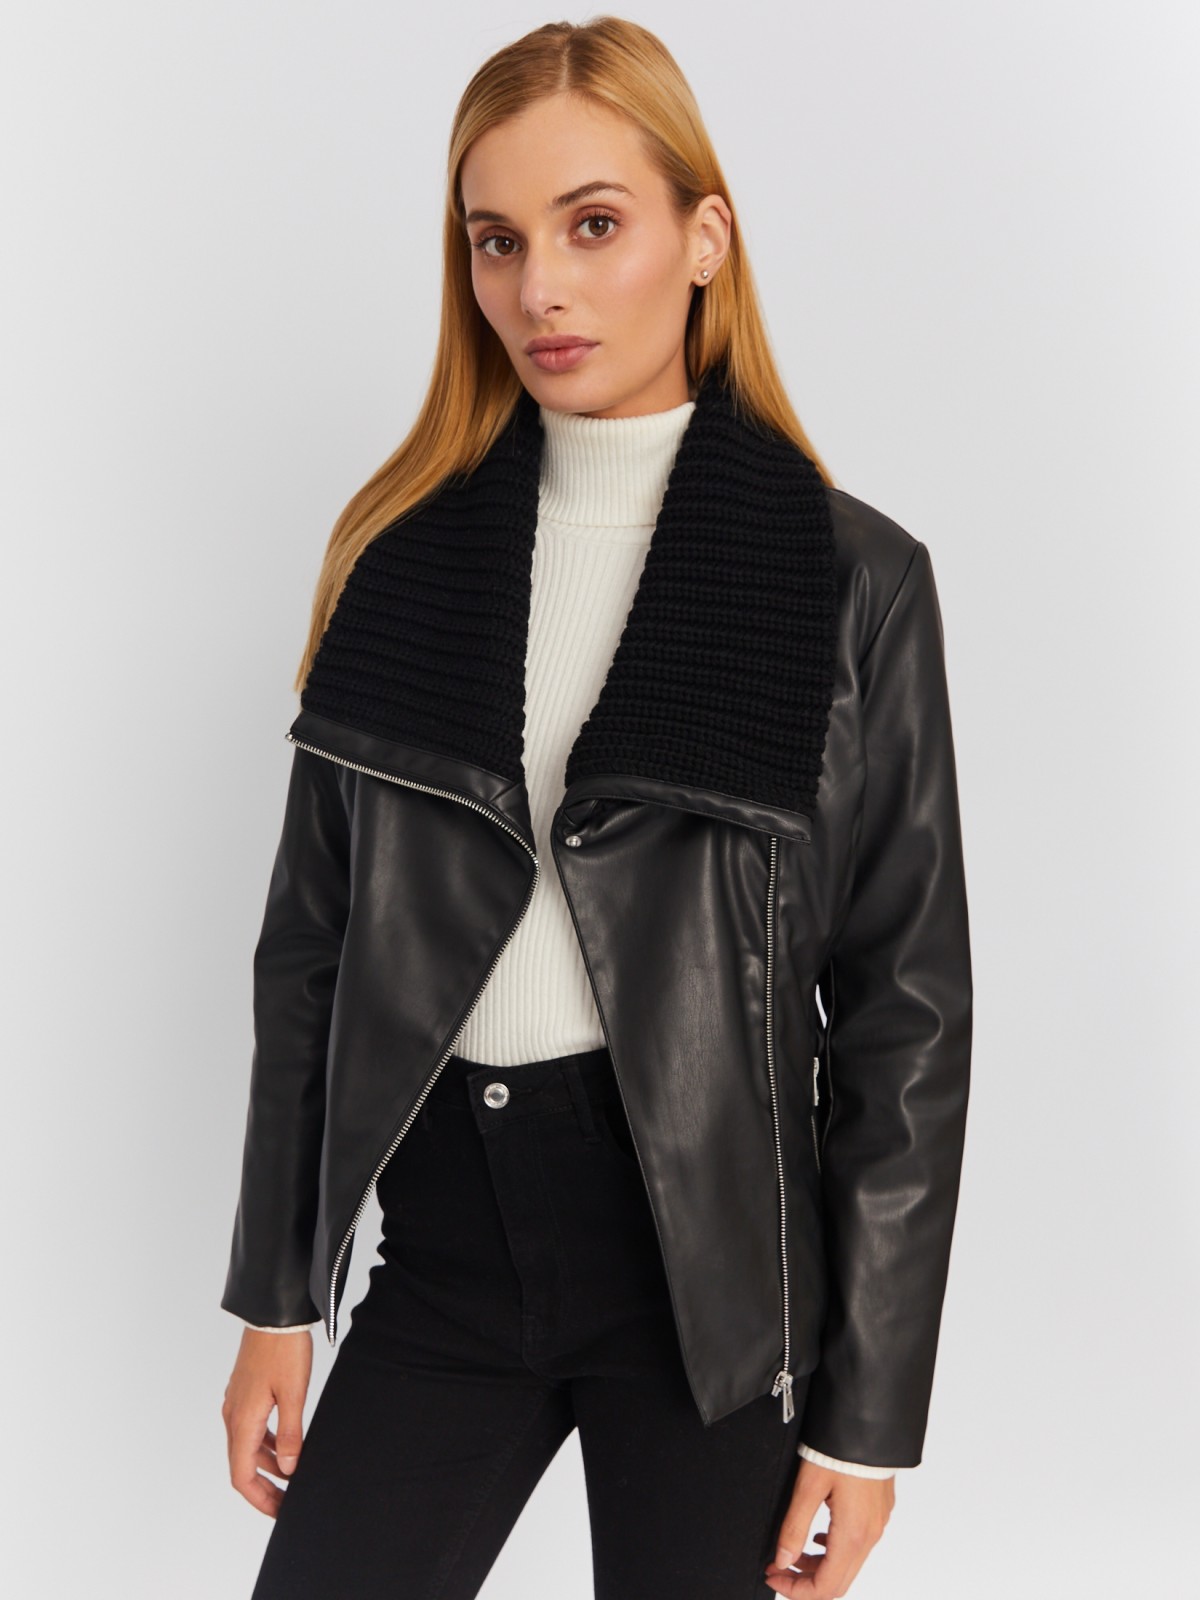 Тёплая куртка-косуха из экокожи на синтепоне с поясом zolla 023335150014, цвет черный, размер M - фото 1